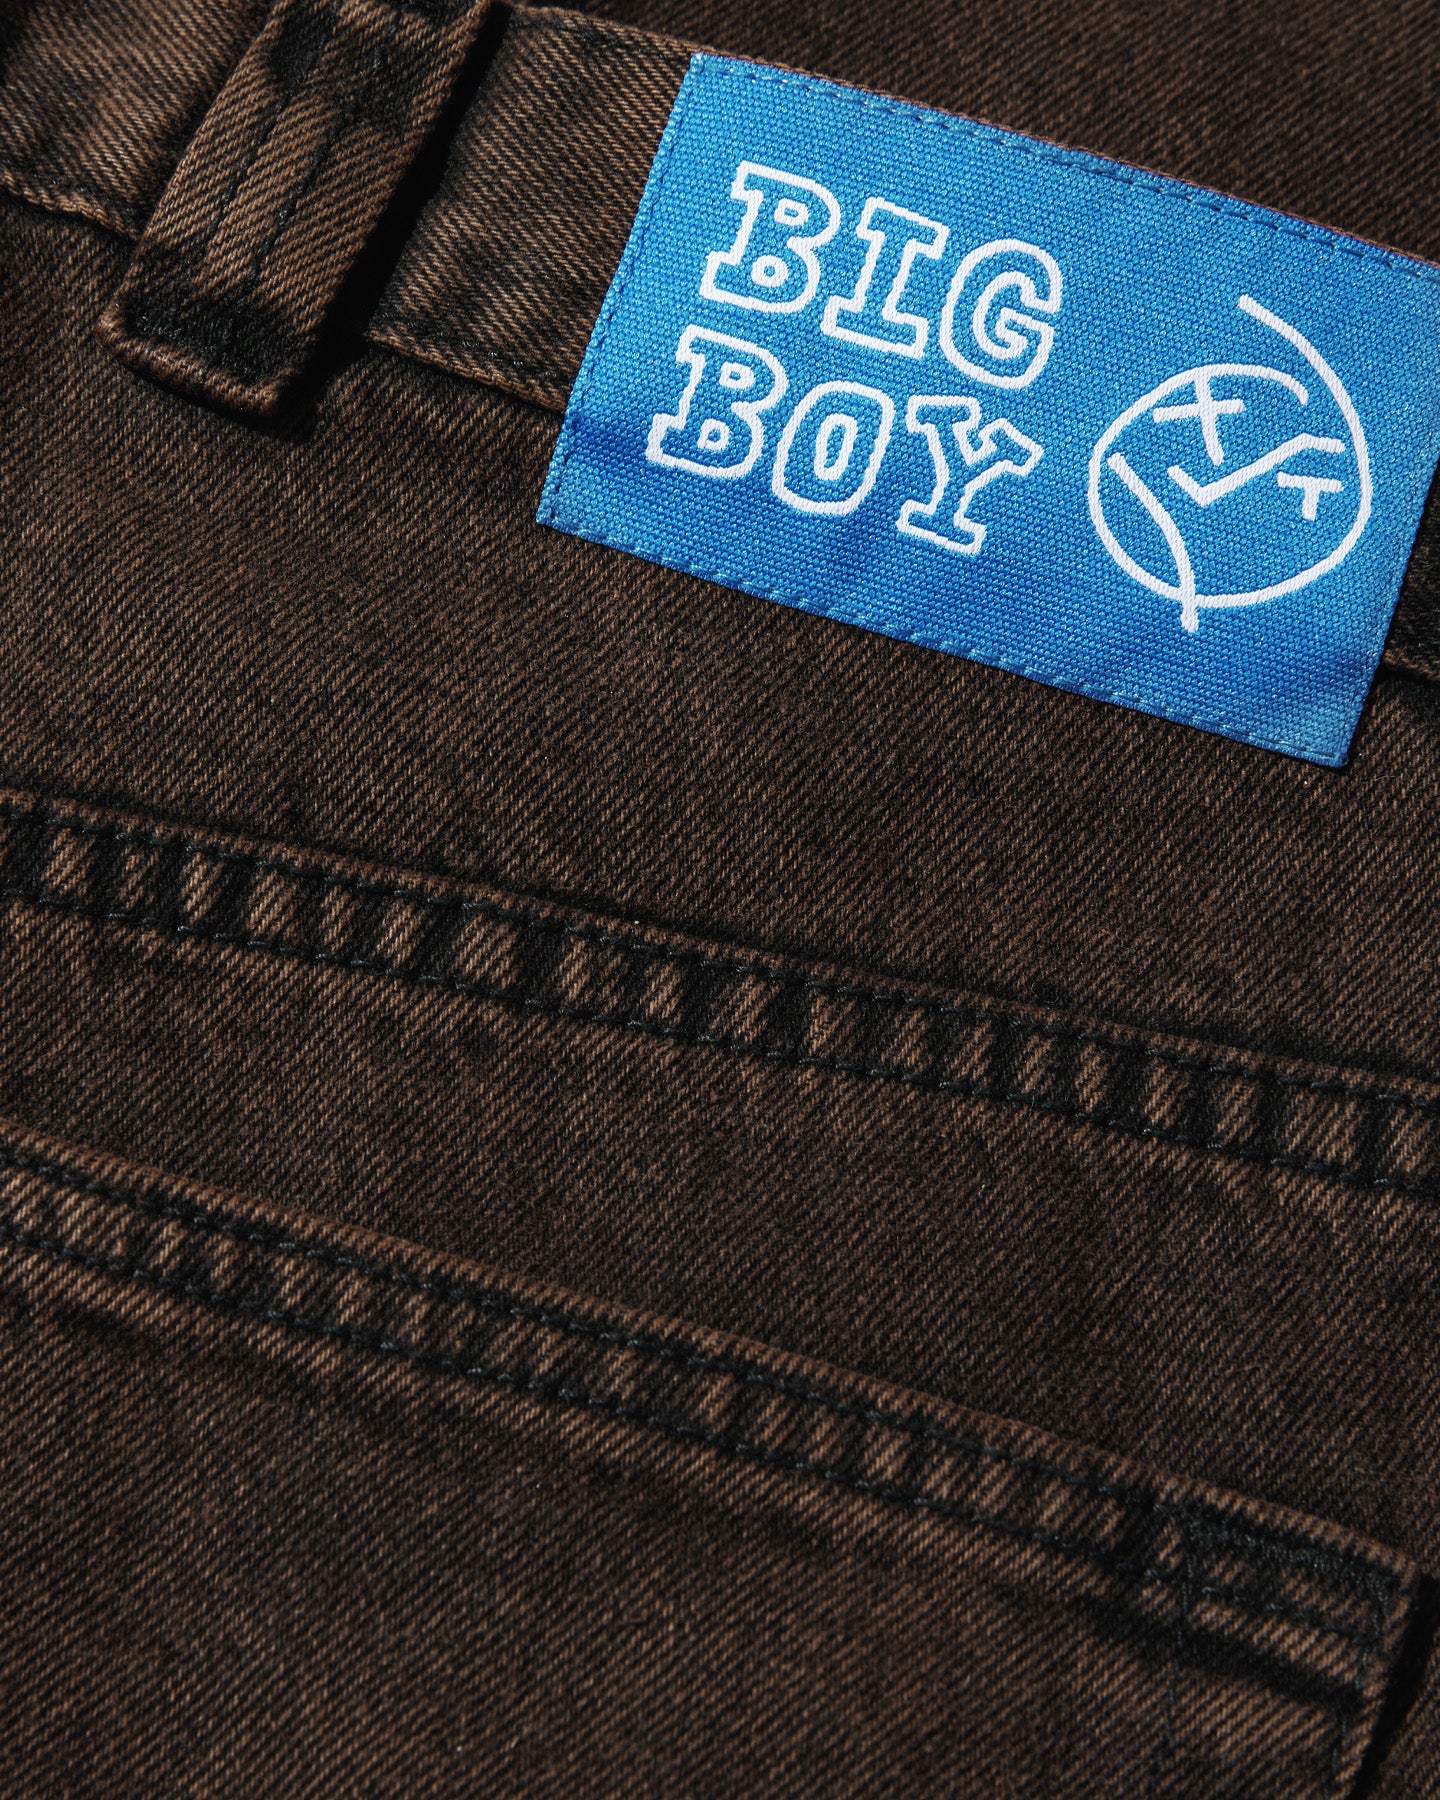 Polar Big Boy Jeans - Brown / Black